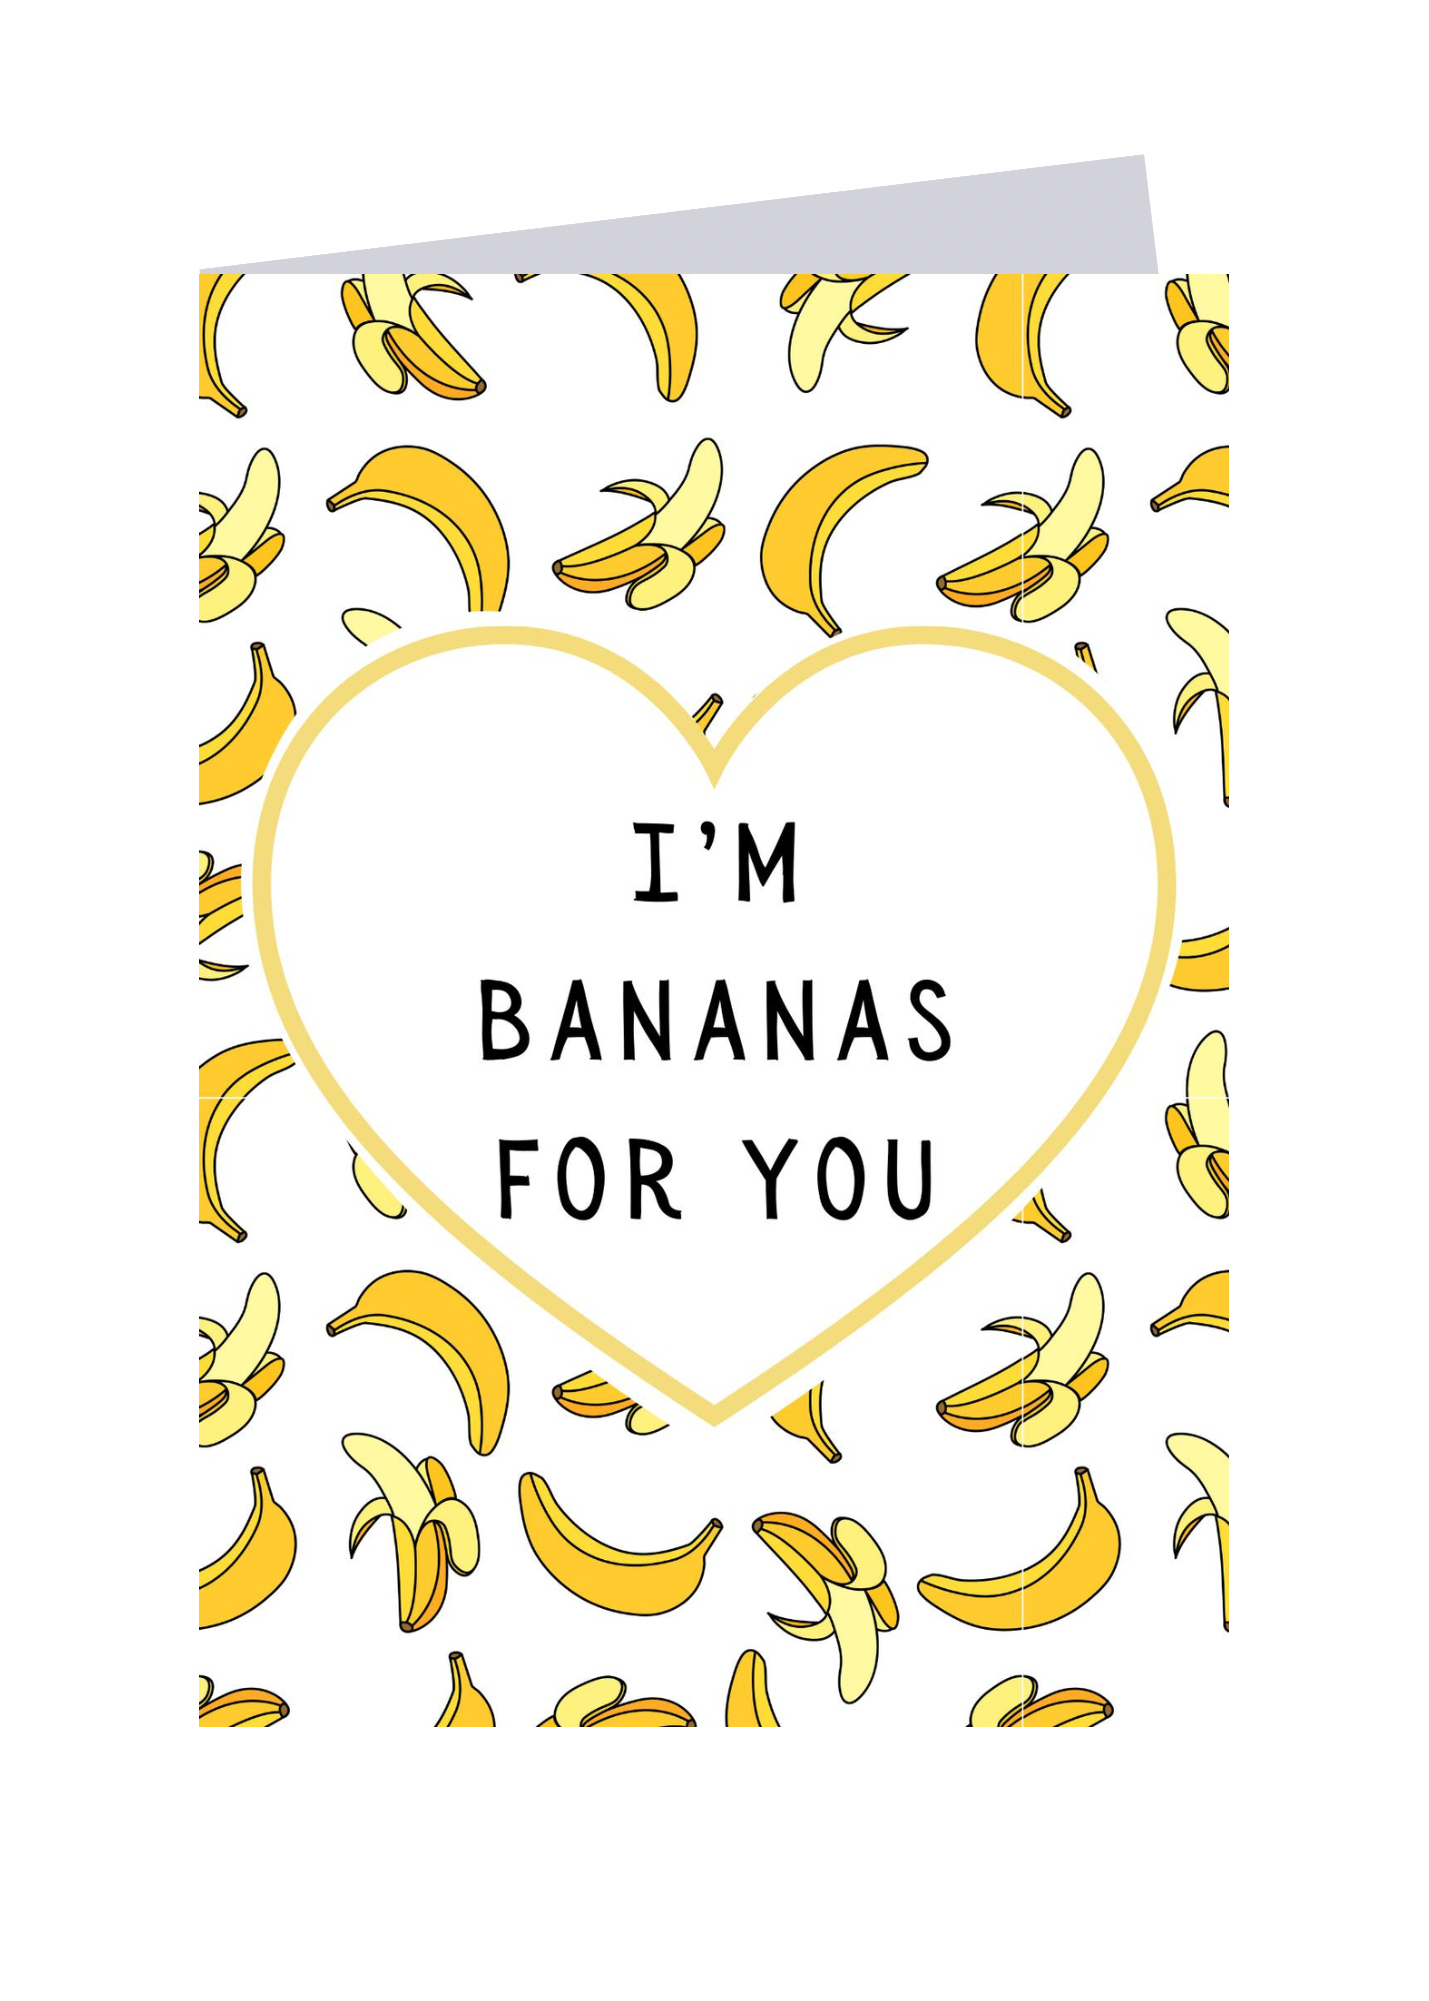 I'm Bananas for you!